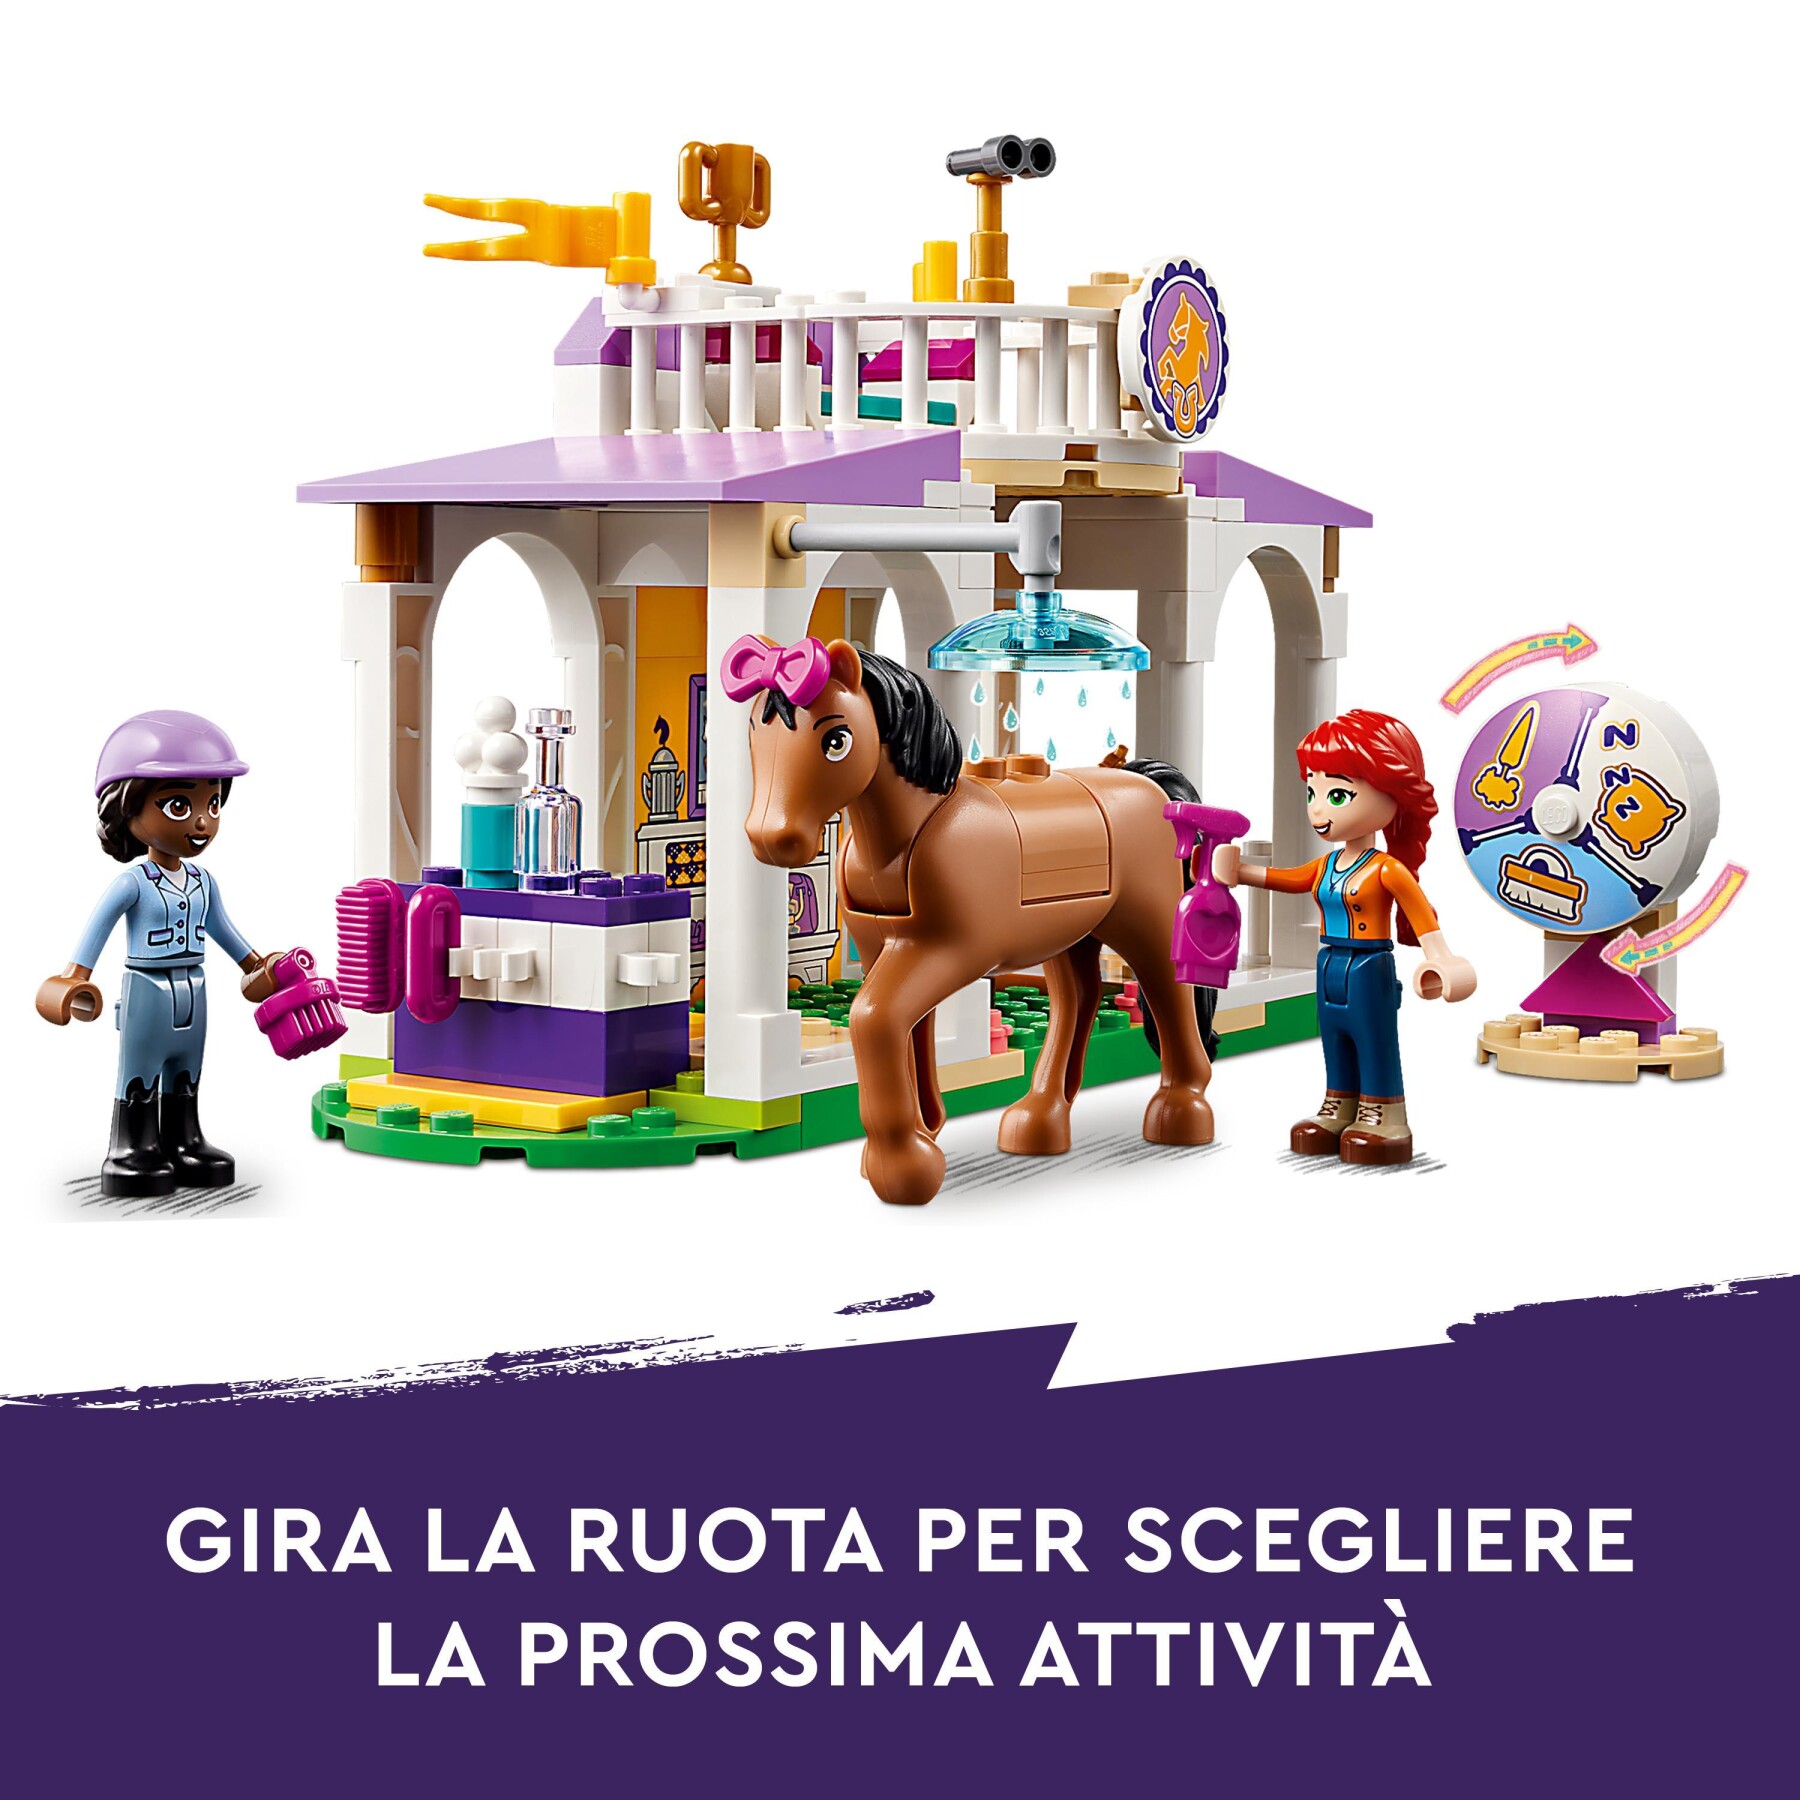 Lego friends 41746 addestramento equestre, scuderia cavalli giocattolo e mini bamboline, cura degli animali, regalo per bambini - LEGO FRIENDS